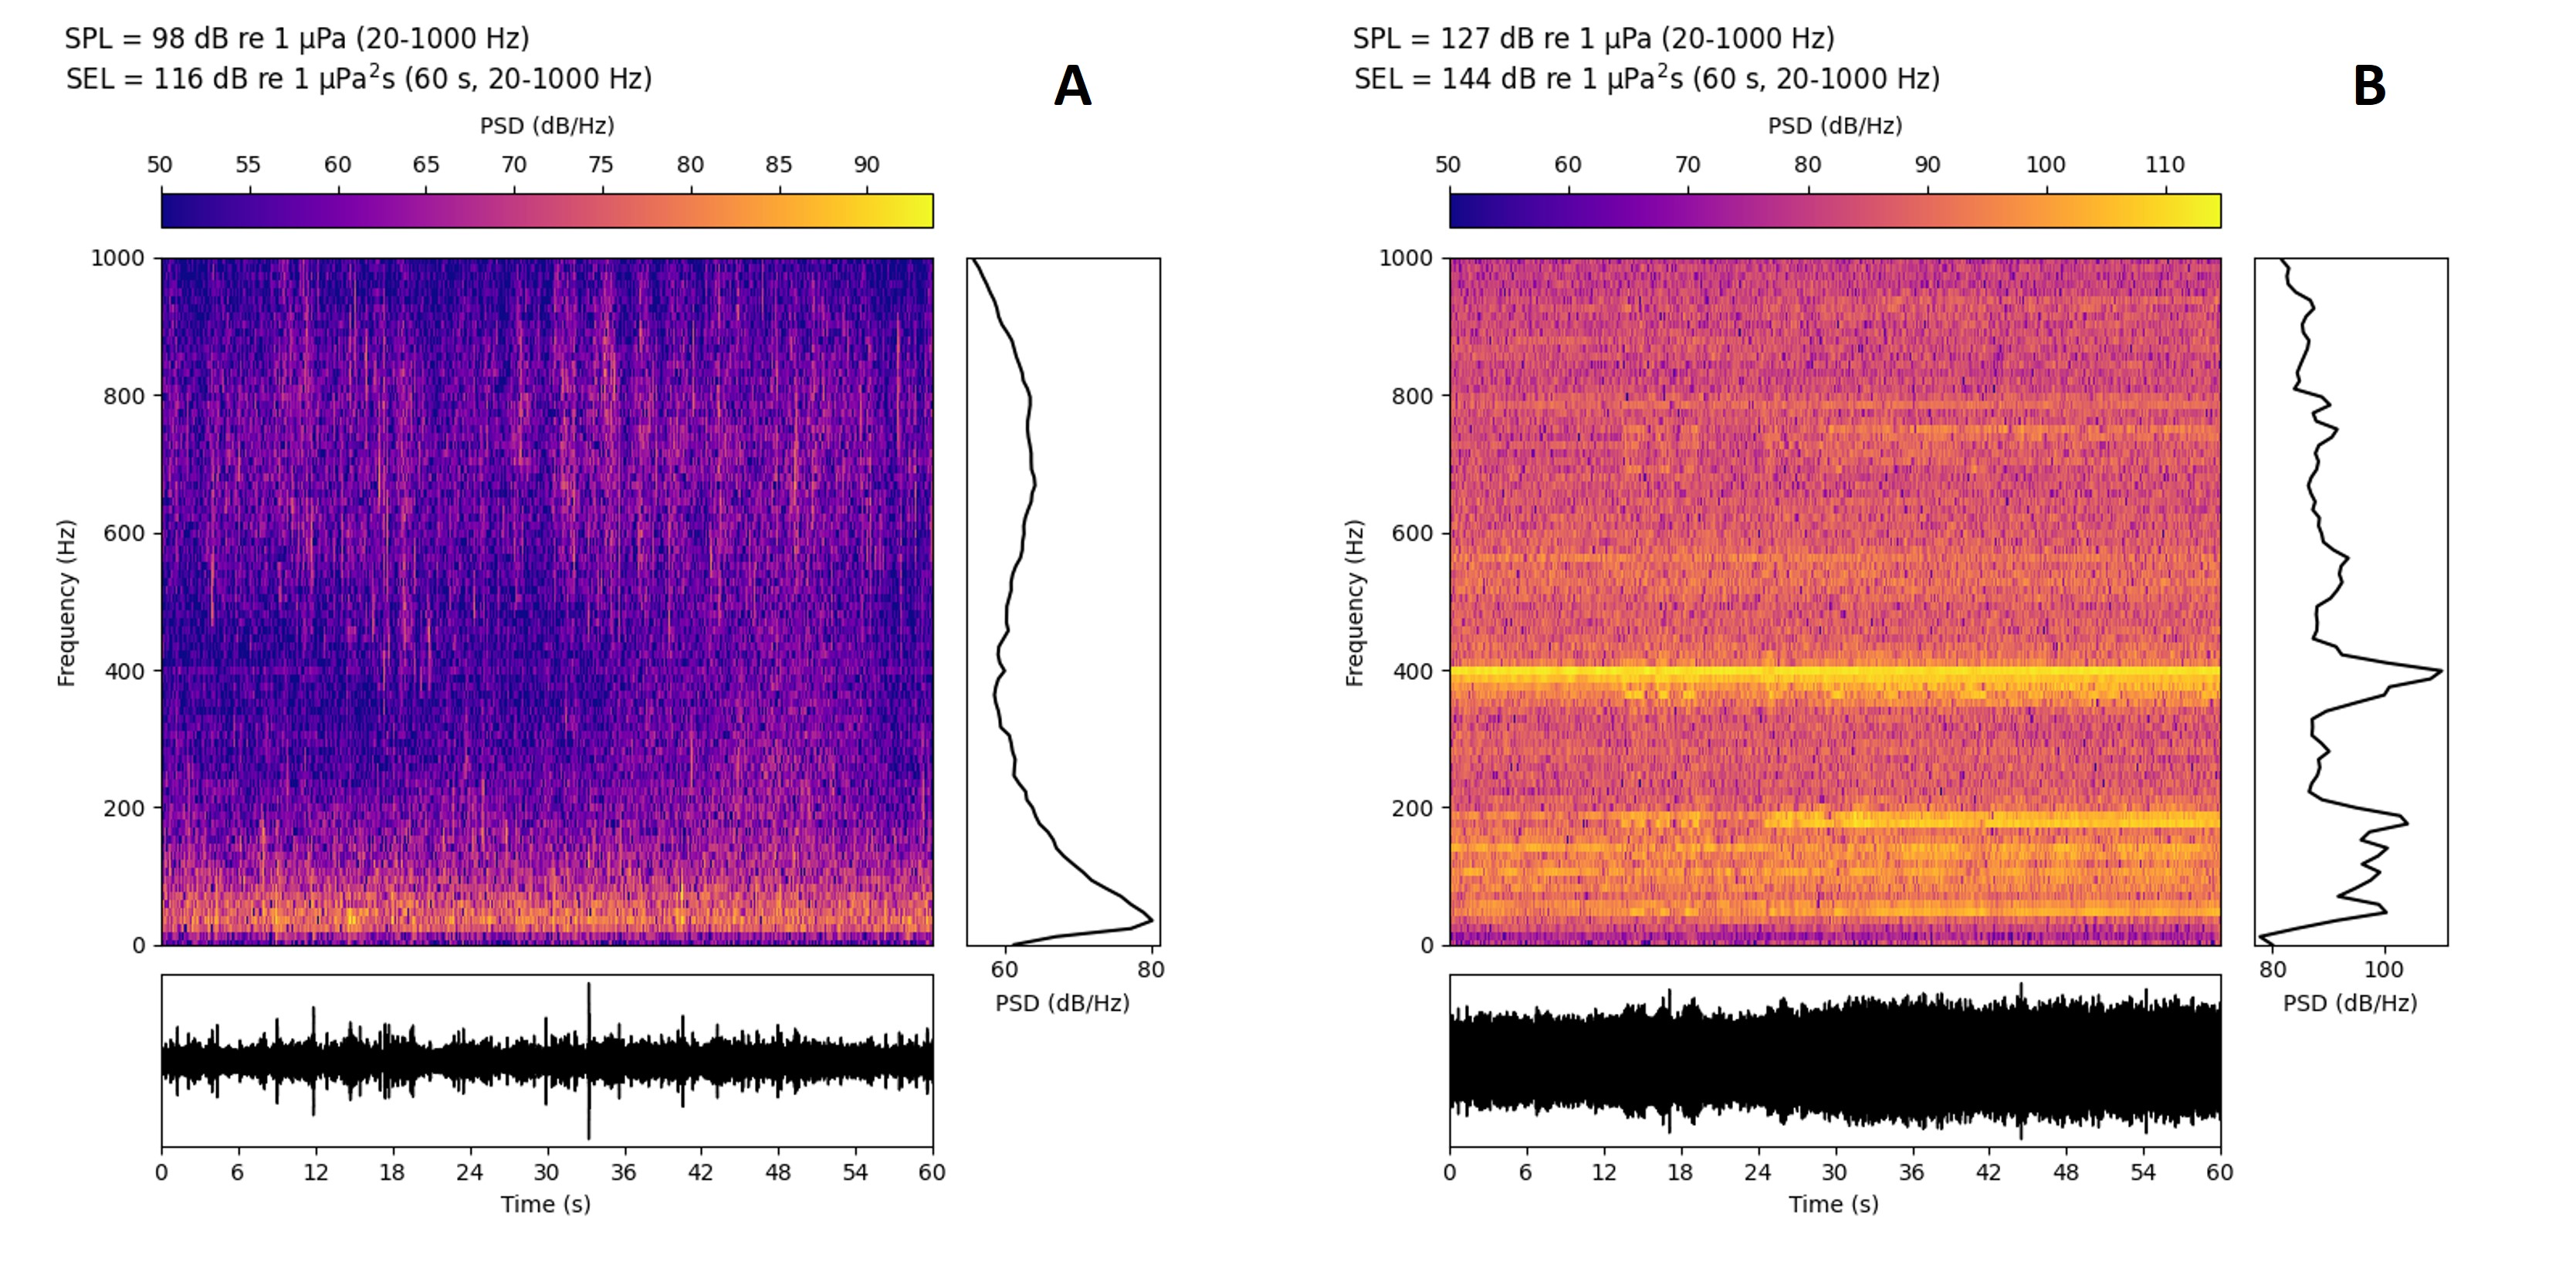 To plott som har ulike farger som viser lydstyrken fra mørk lilla, via oransje til lys gul ved ulike frekvenser over tid. I venstre figur viser det lilla området at det er lite lyd om natten, men noe lyd på lave frekvenser. Høyre figur viser kraftigere farger som illustrerer lyd fra en brønnbåt ved merden. Høyre paneler viser en svart bølgete linje som indikerer gjennomsnitt av lyden over de ulike frekvenser hvor det er mest lyd i det lavfrekvente området om natten og mer fordelt på flere frekvenser og frekvenstopper med brønnbåt tilstede. Underpaneler viser en bølgeformet svart, linje med utslag opp og ned som indikasjon av lydens variasjon i styrke over tid hvor det om natten er lave utslag, mens brønnbåten er støyende med store, kontinuerlige utslag.